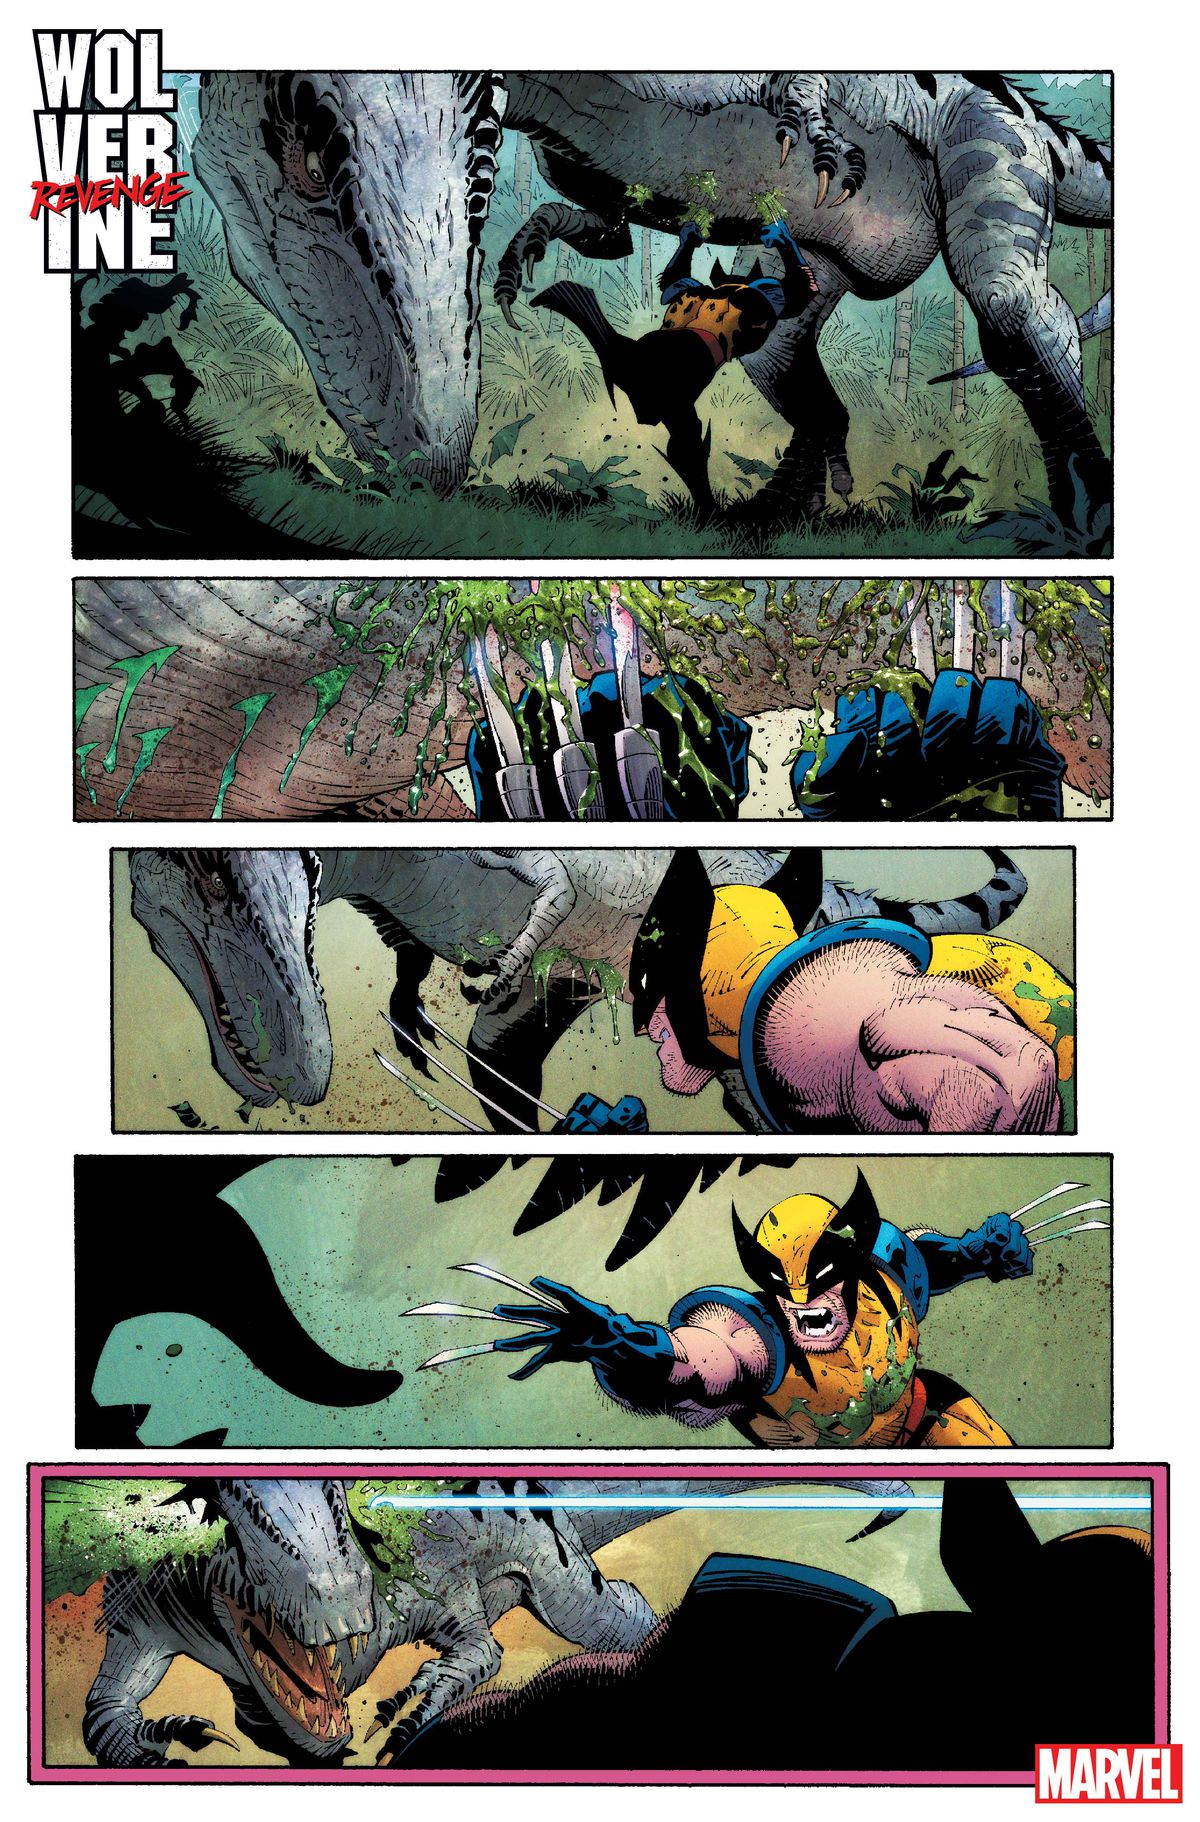 Wolverine court sous un dinosaure de type thérapode, lui coupant le ventre avec ses griffes.  Lui et le dinosaure s'affrontent et sont sur le point de s'affronter à nouveau lorsqu'un projectile ou un laser quelconque tire depuis le panneau, traversant la tête du dinosaure d'un œil à l'autre, dans Wolverine : Revenge #1.